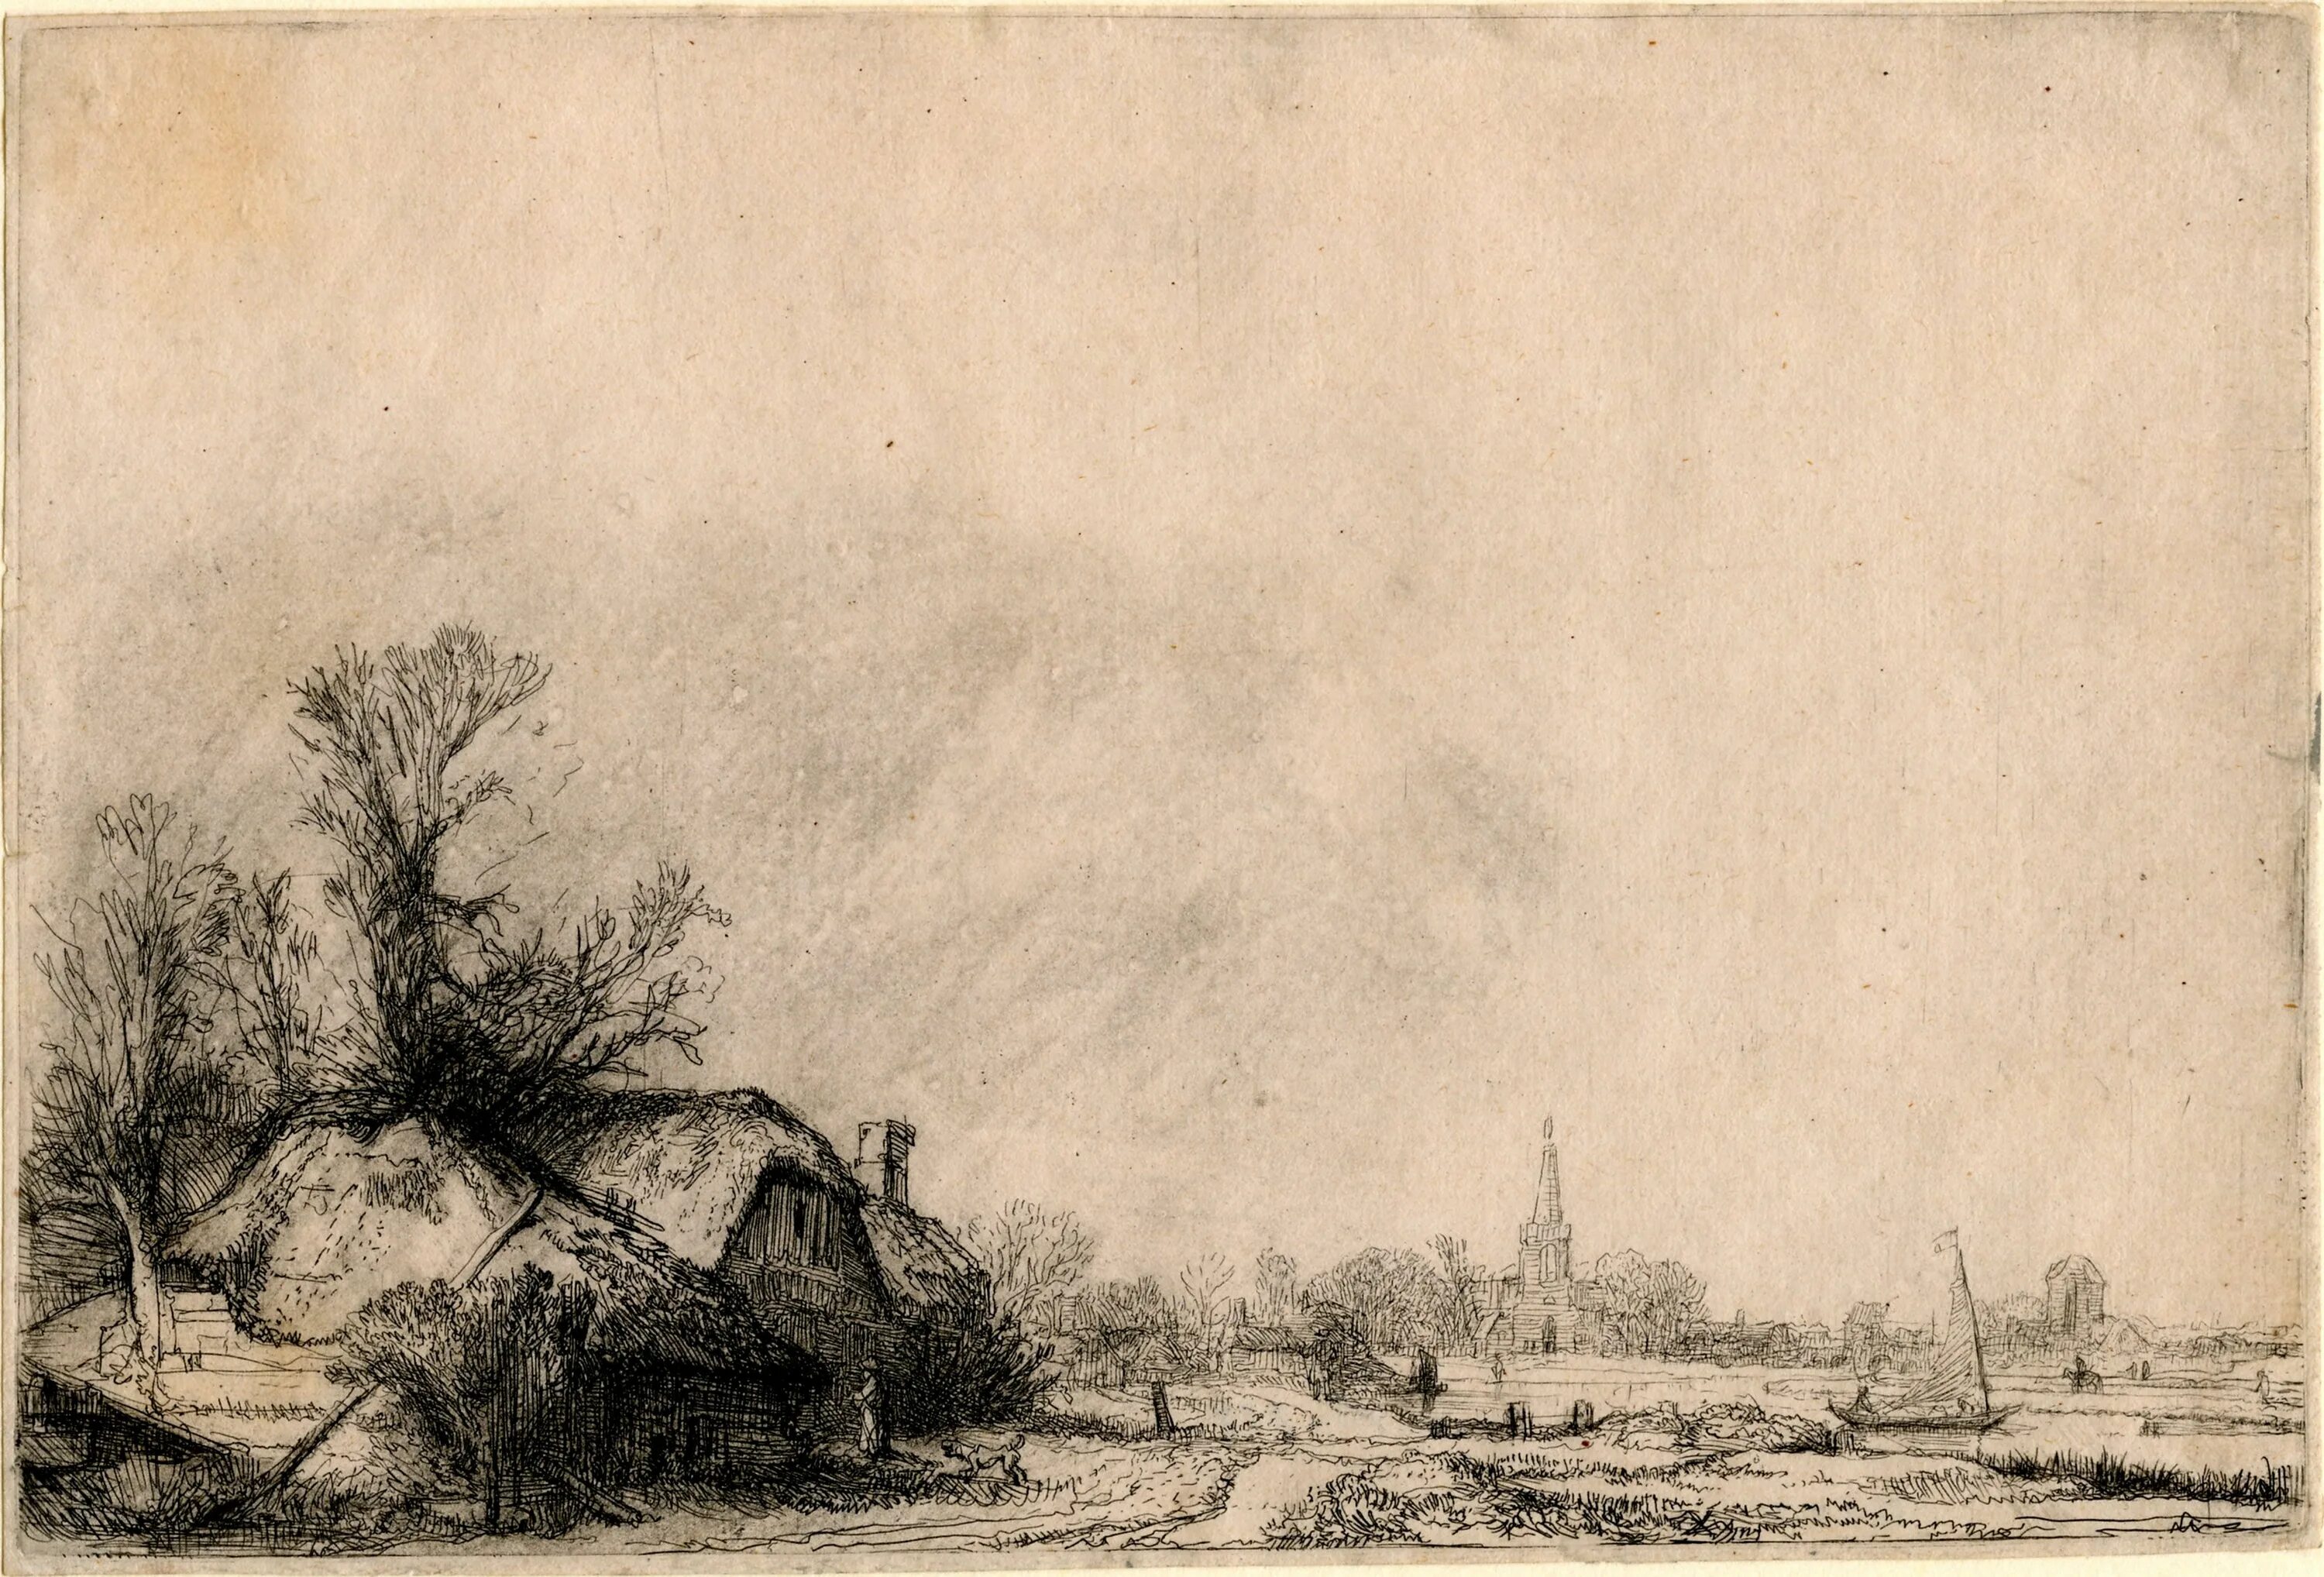 Офорты Рембрандта. Рембрандт пейзаж офорт Голландия. Рембрандт Ван Рейн. Три дерева. 1643 Г. офорт.. Рембрандт пейзаж офорт Голландия XVII В. Офорт художник